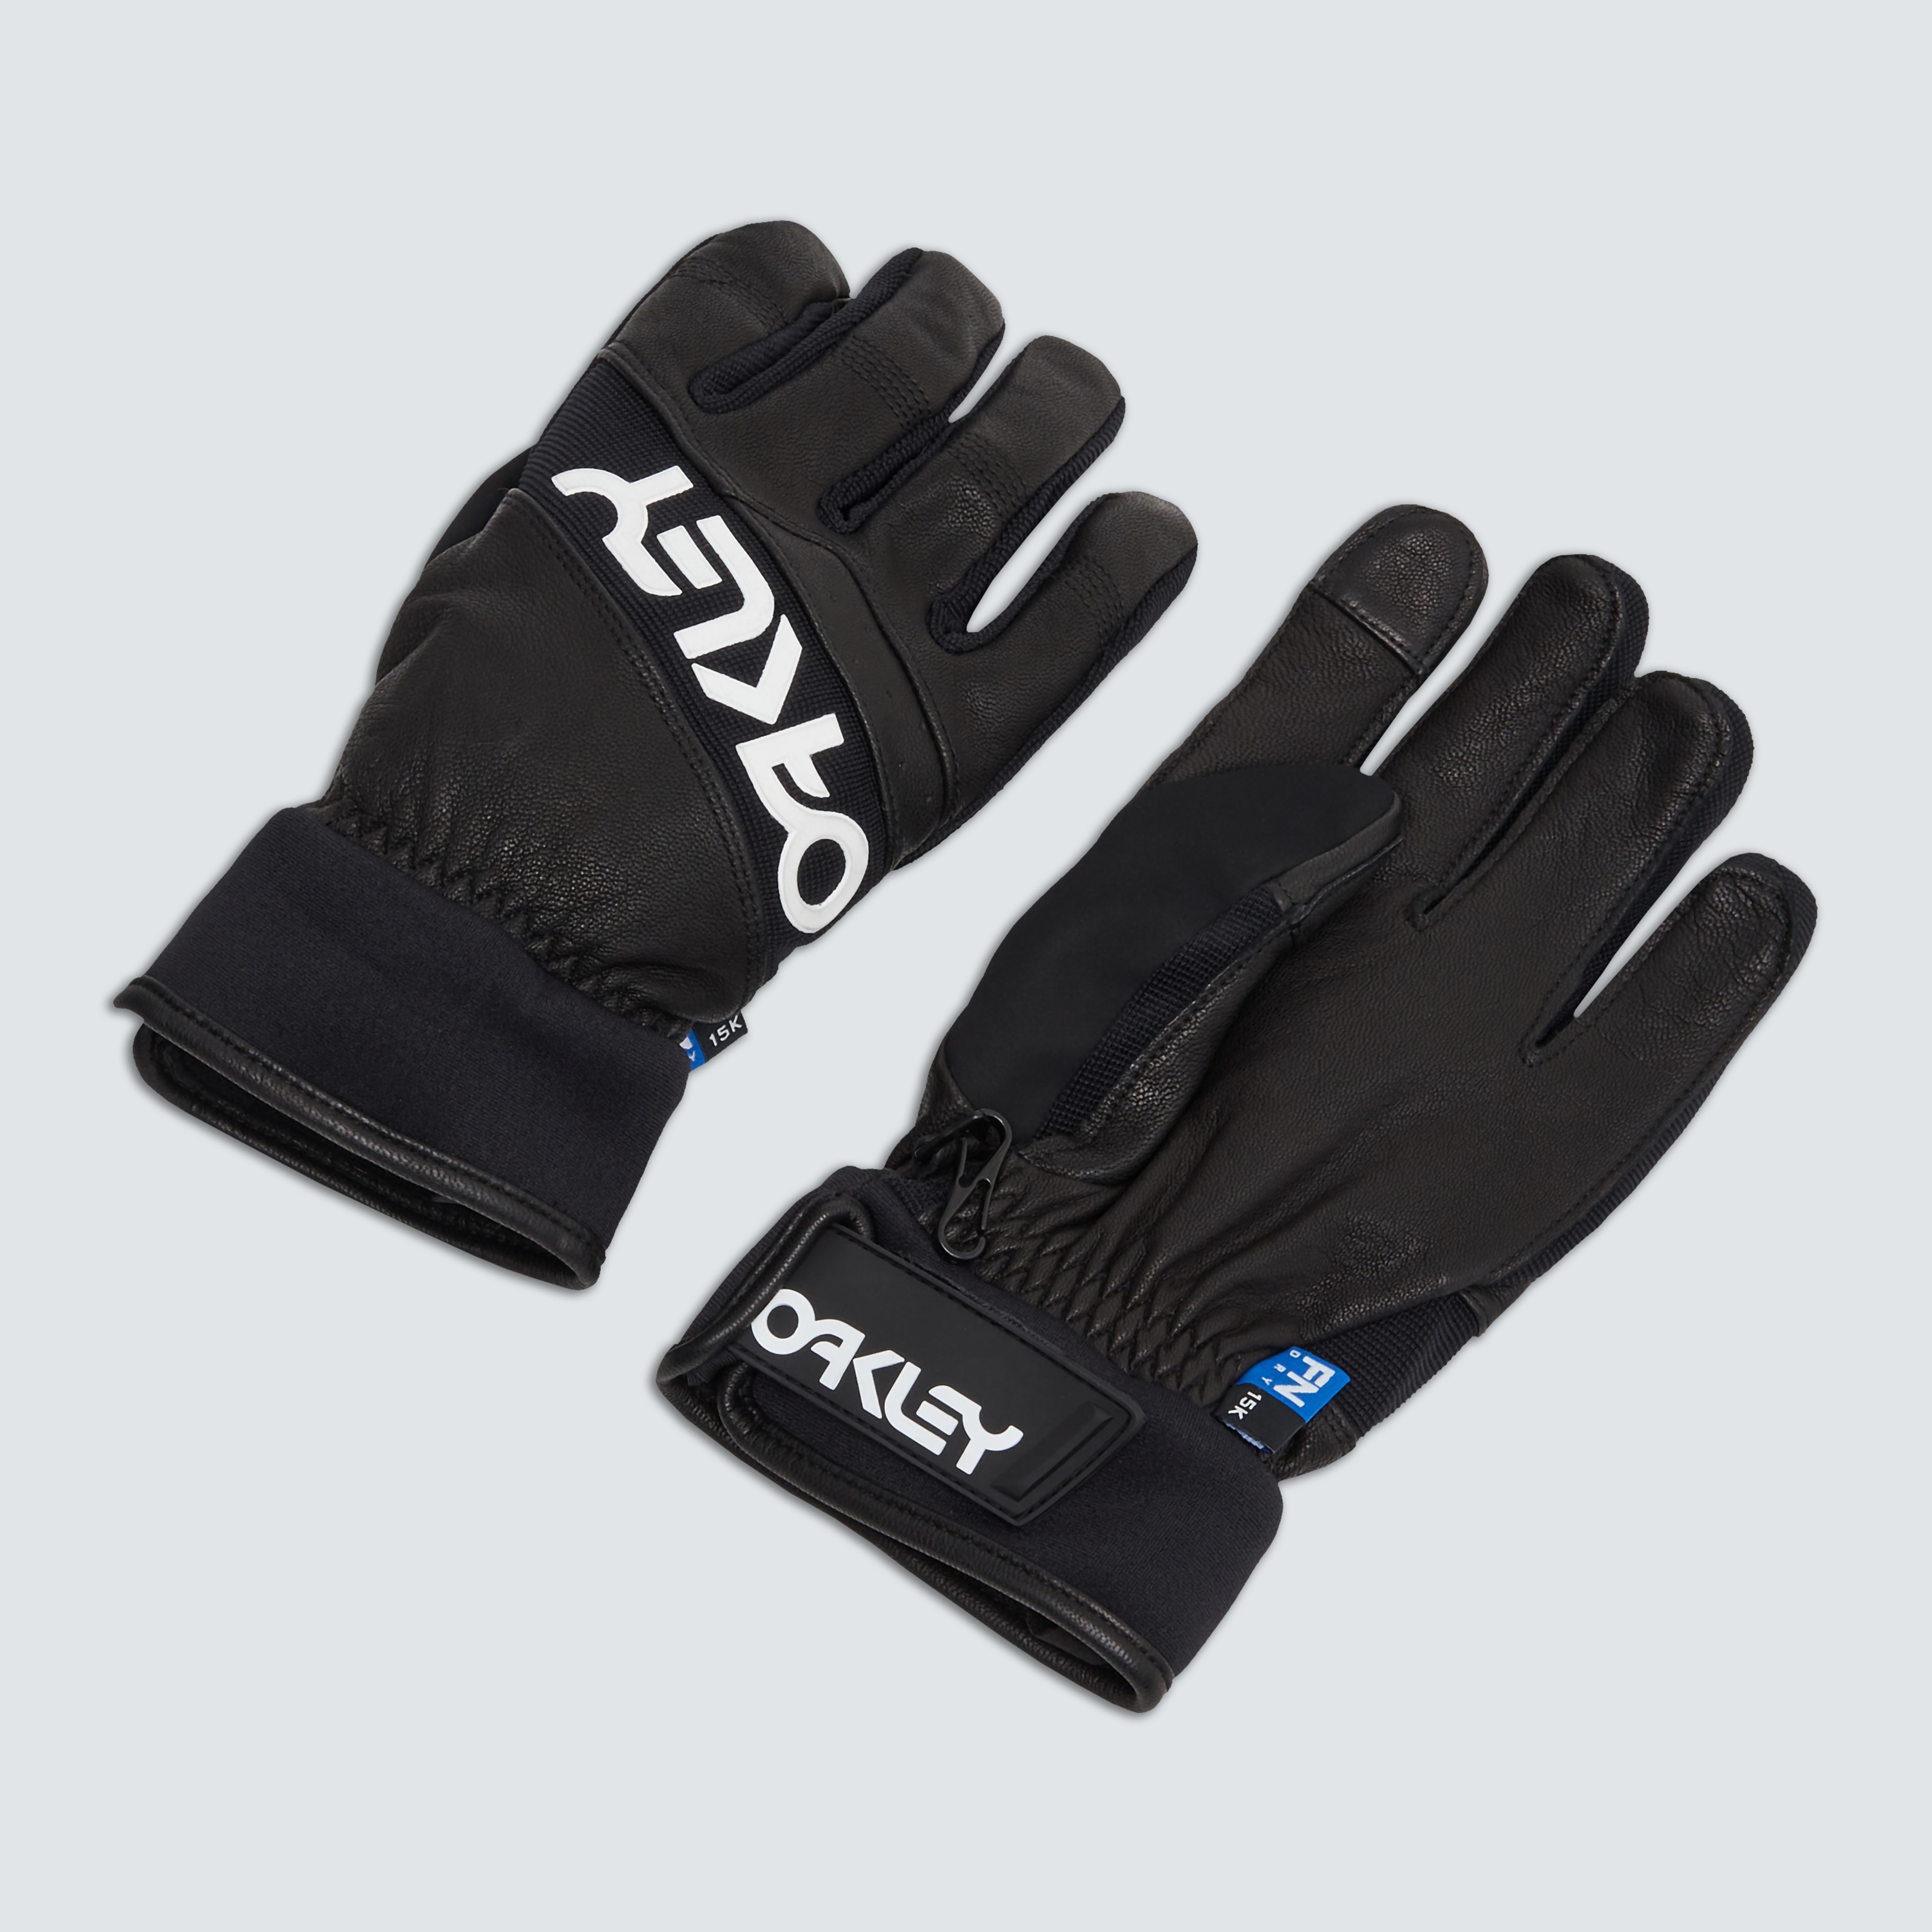 Oakley Factory Winter Glove 2.0 - Blackout - 94263-02E | Oakley US ...